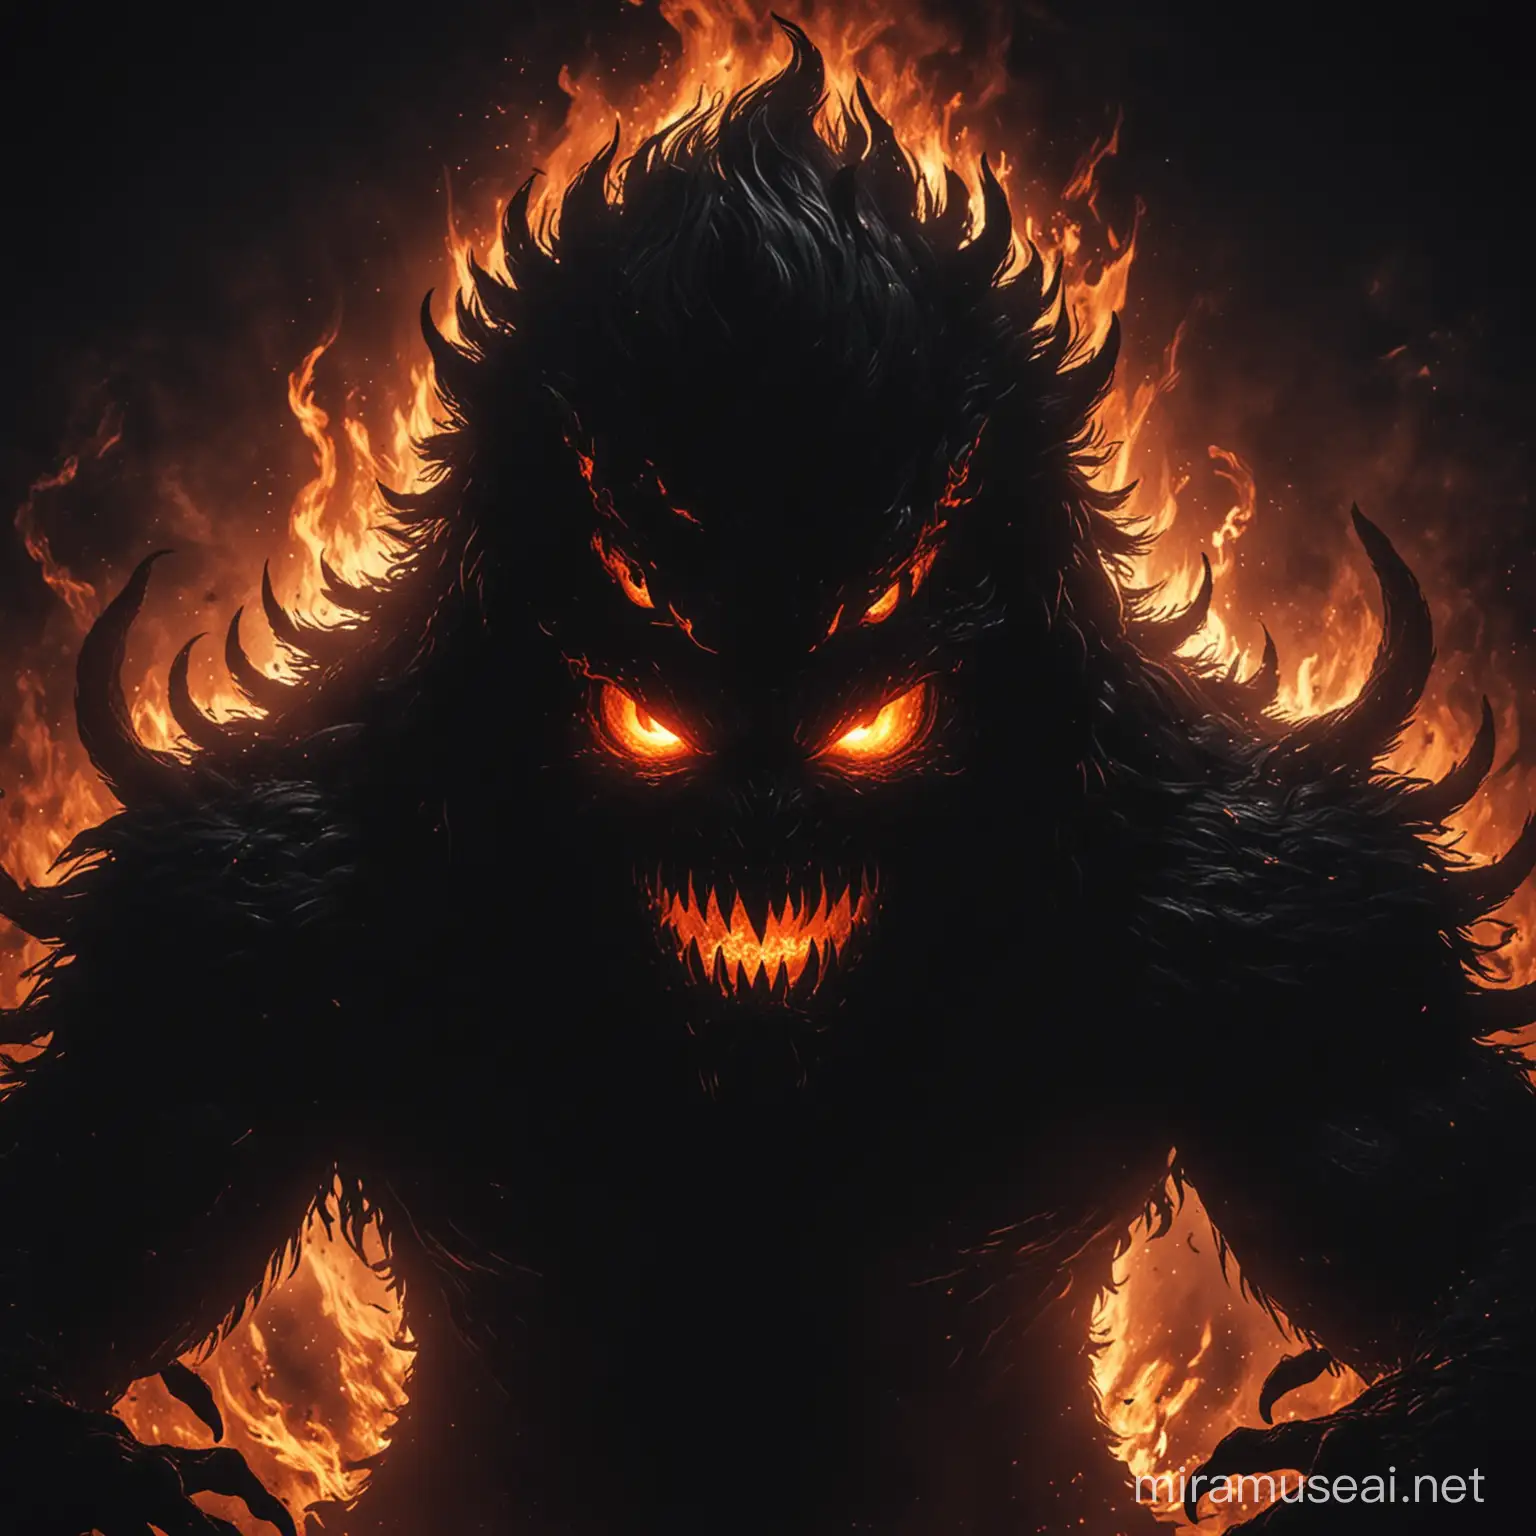 Fierce Shadow Monster with Fiery Eyes in Wild Darkness